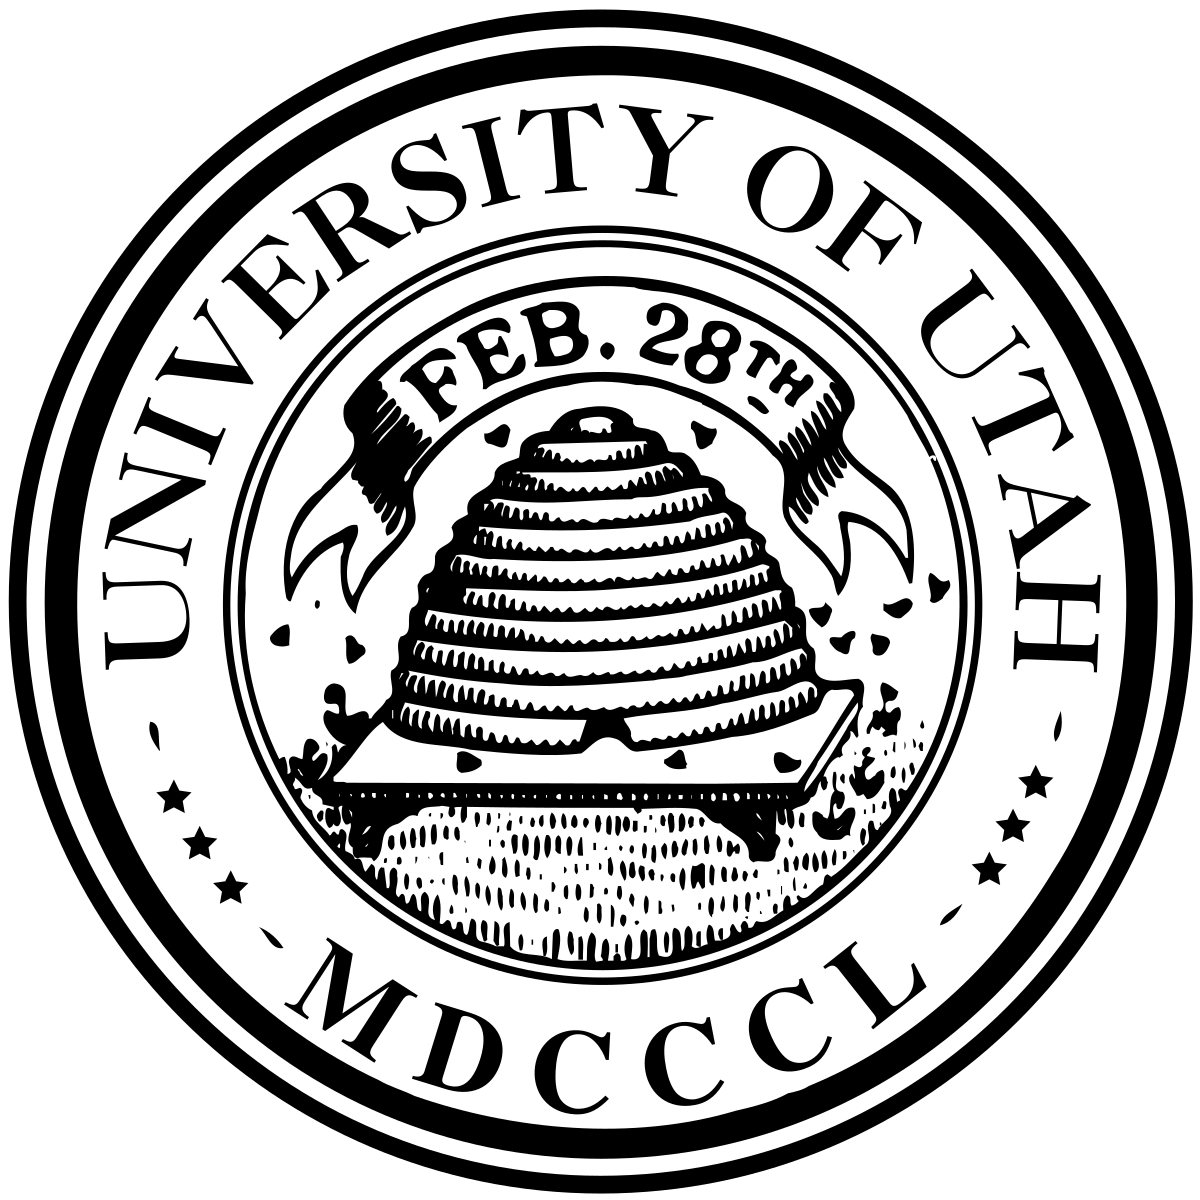 U of Utah Logo - University of Utah